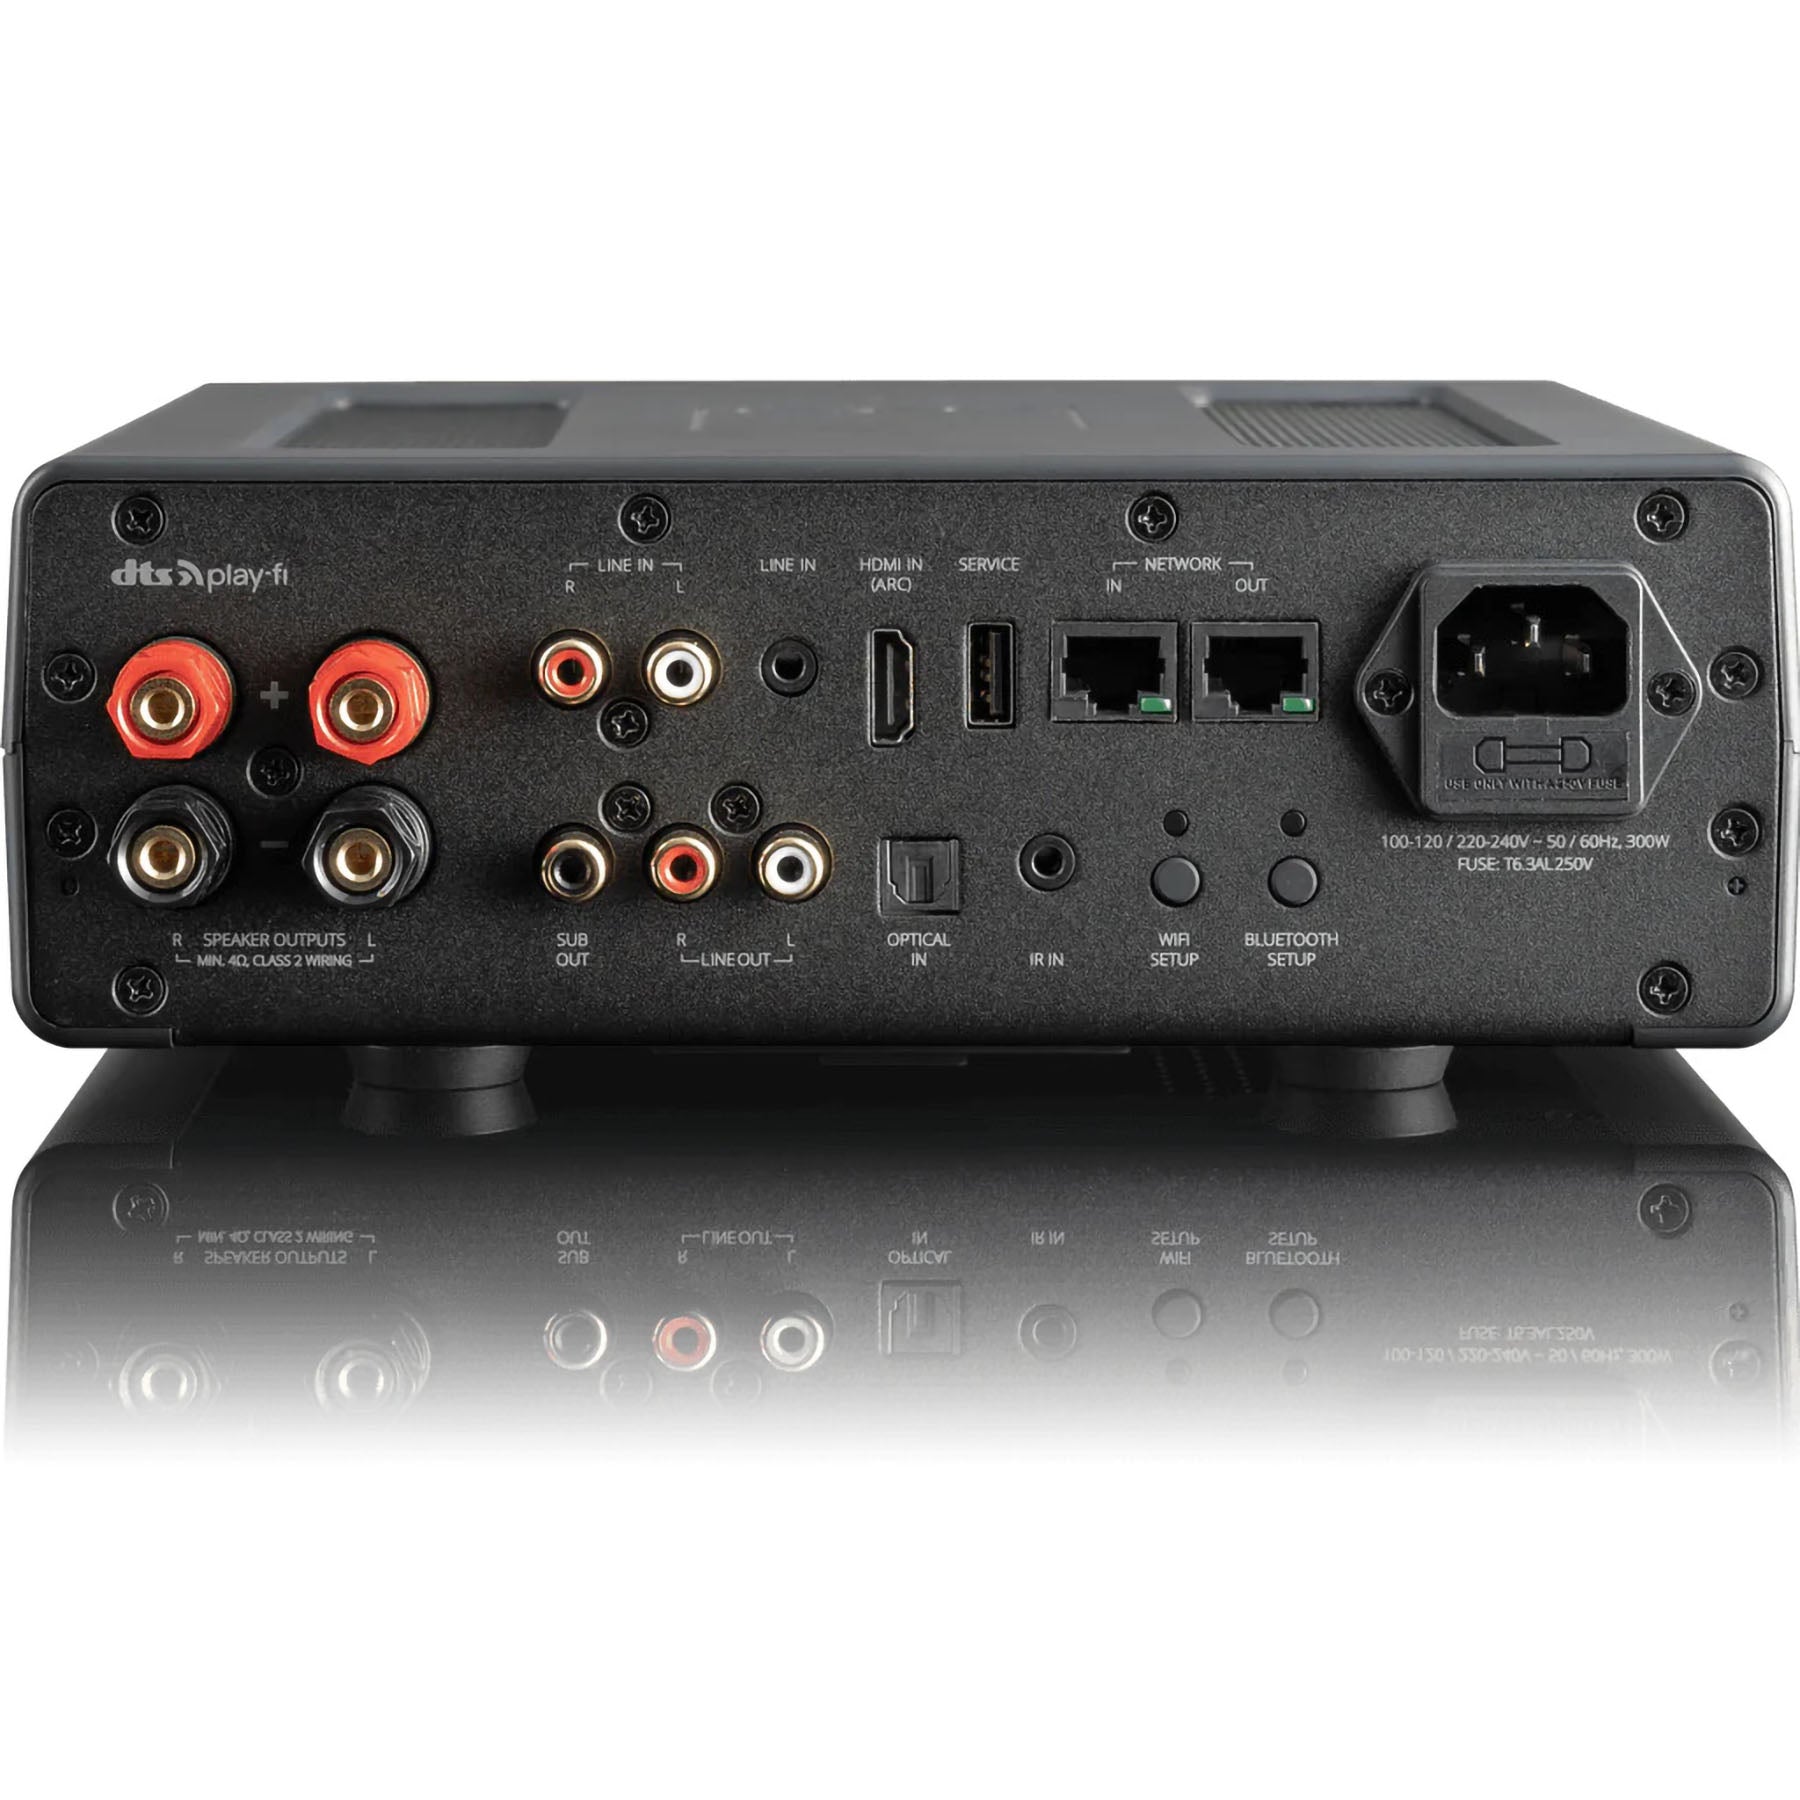 SVS  Prime Wireless Pro SoundBase Amplifier